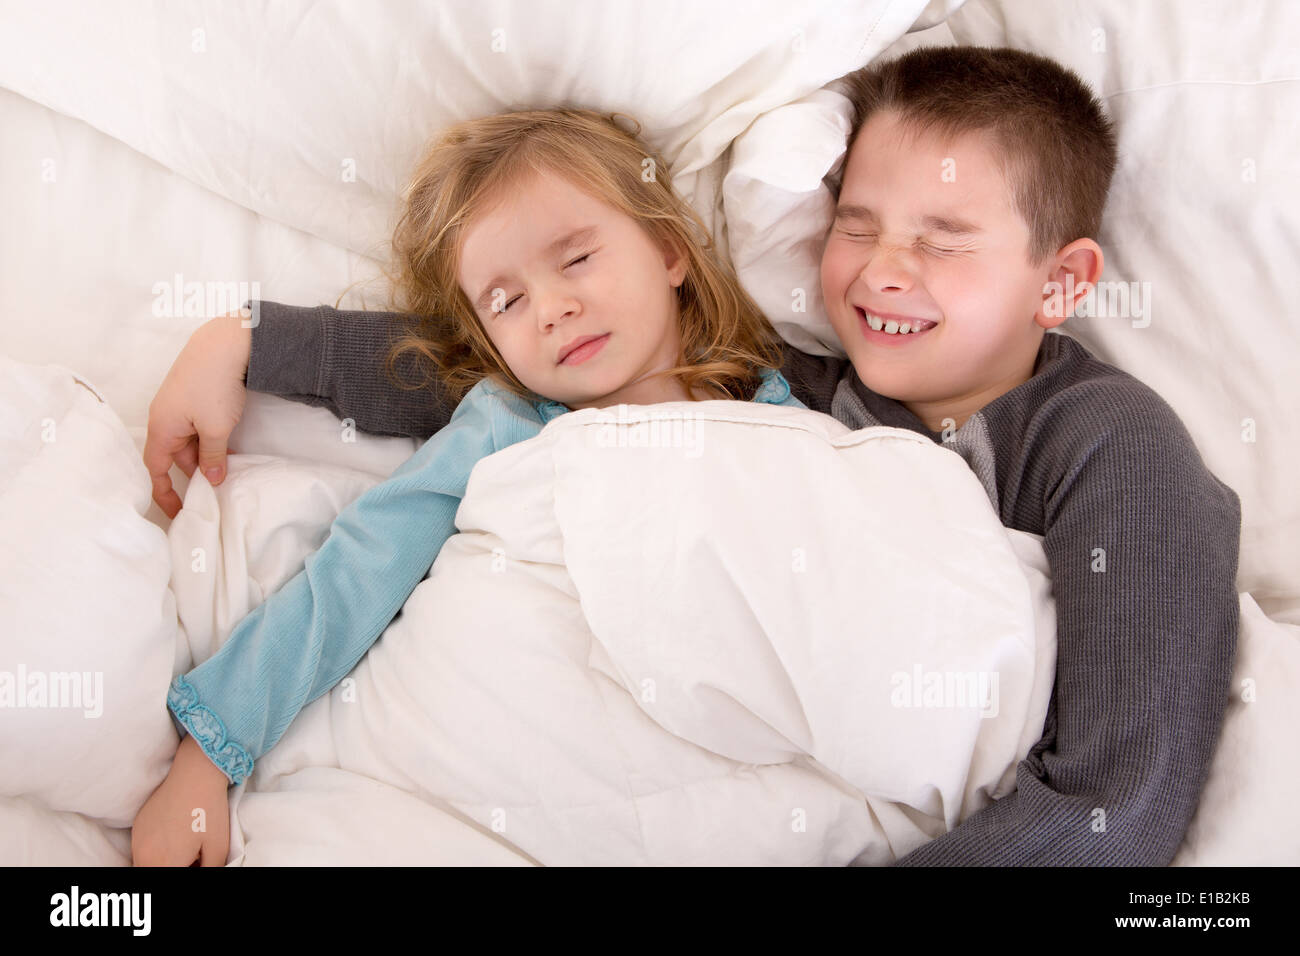 Пришел к сестре в постель. Мальчик с девочкой в постели. Кровать для мальчика и девочки в одной.